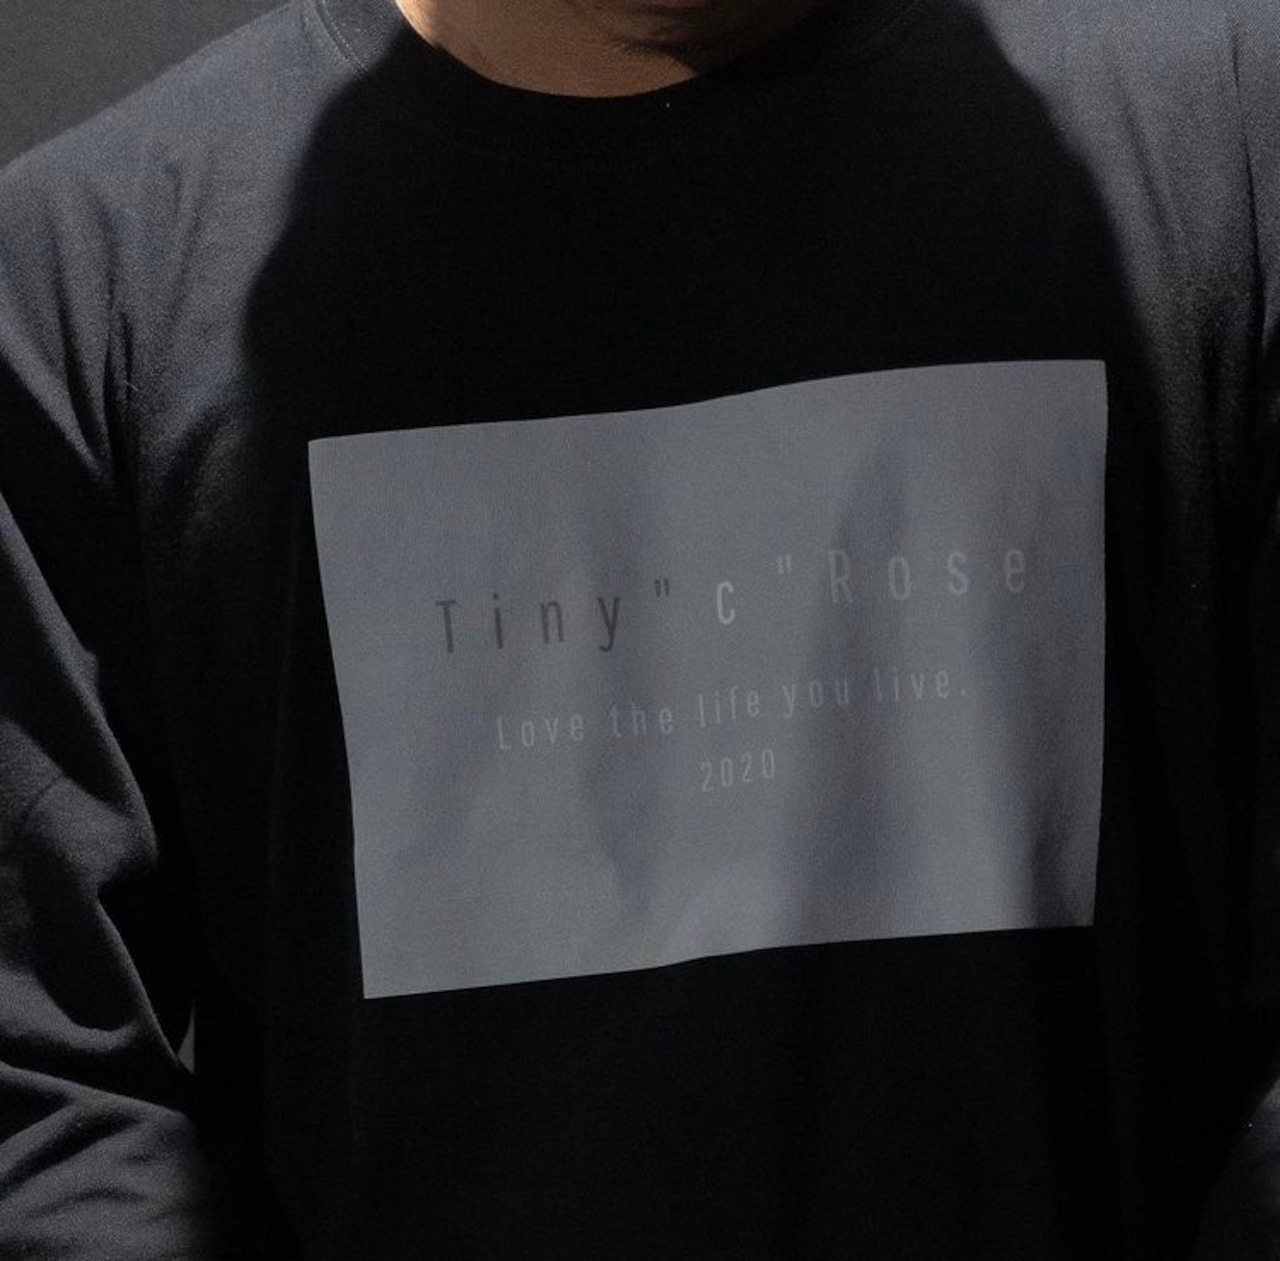 TINY"C"ROSE LONG SLEEVE BLACK【サイズ別注品】